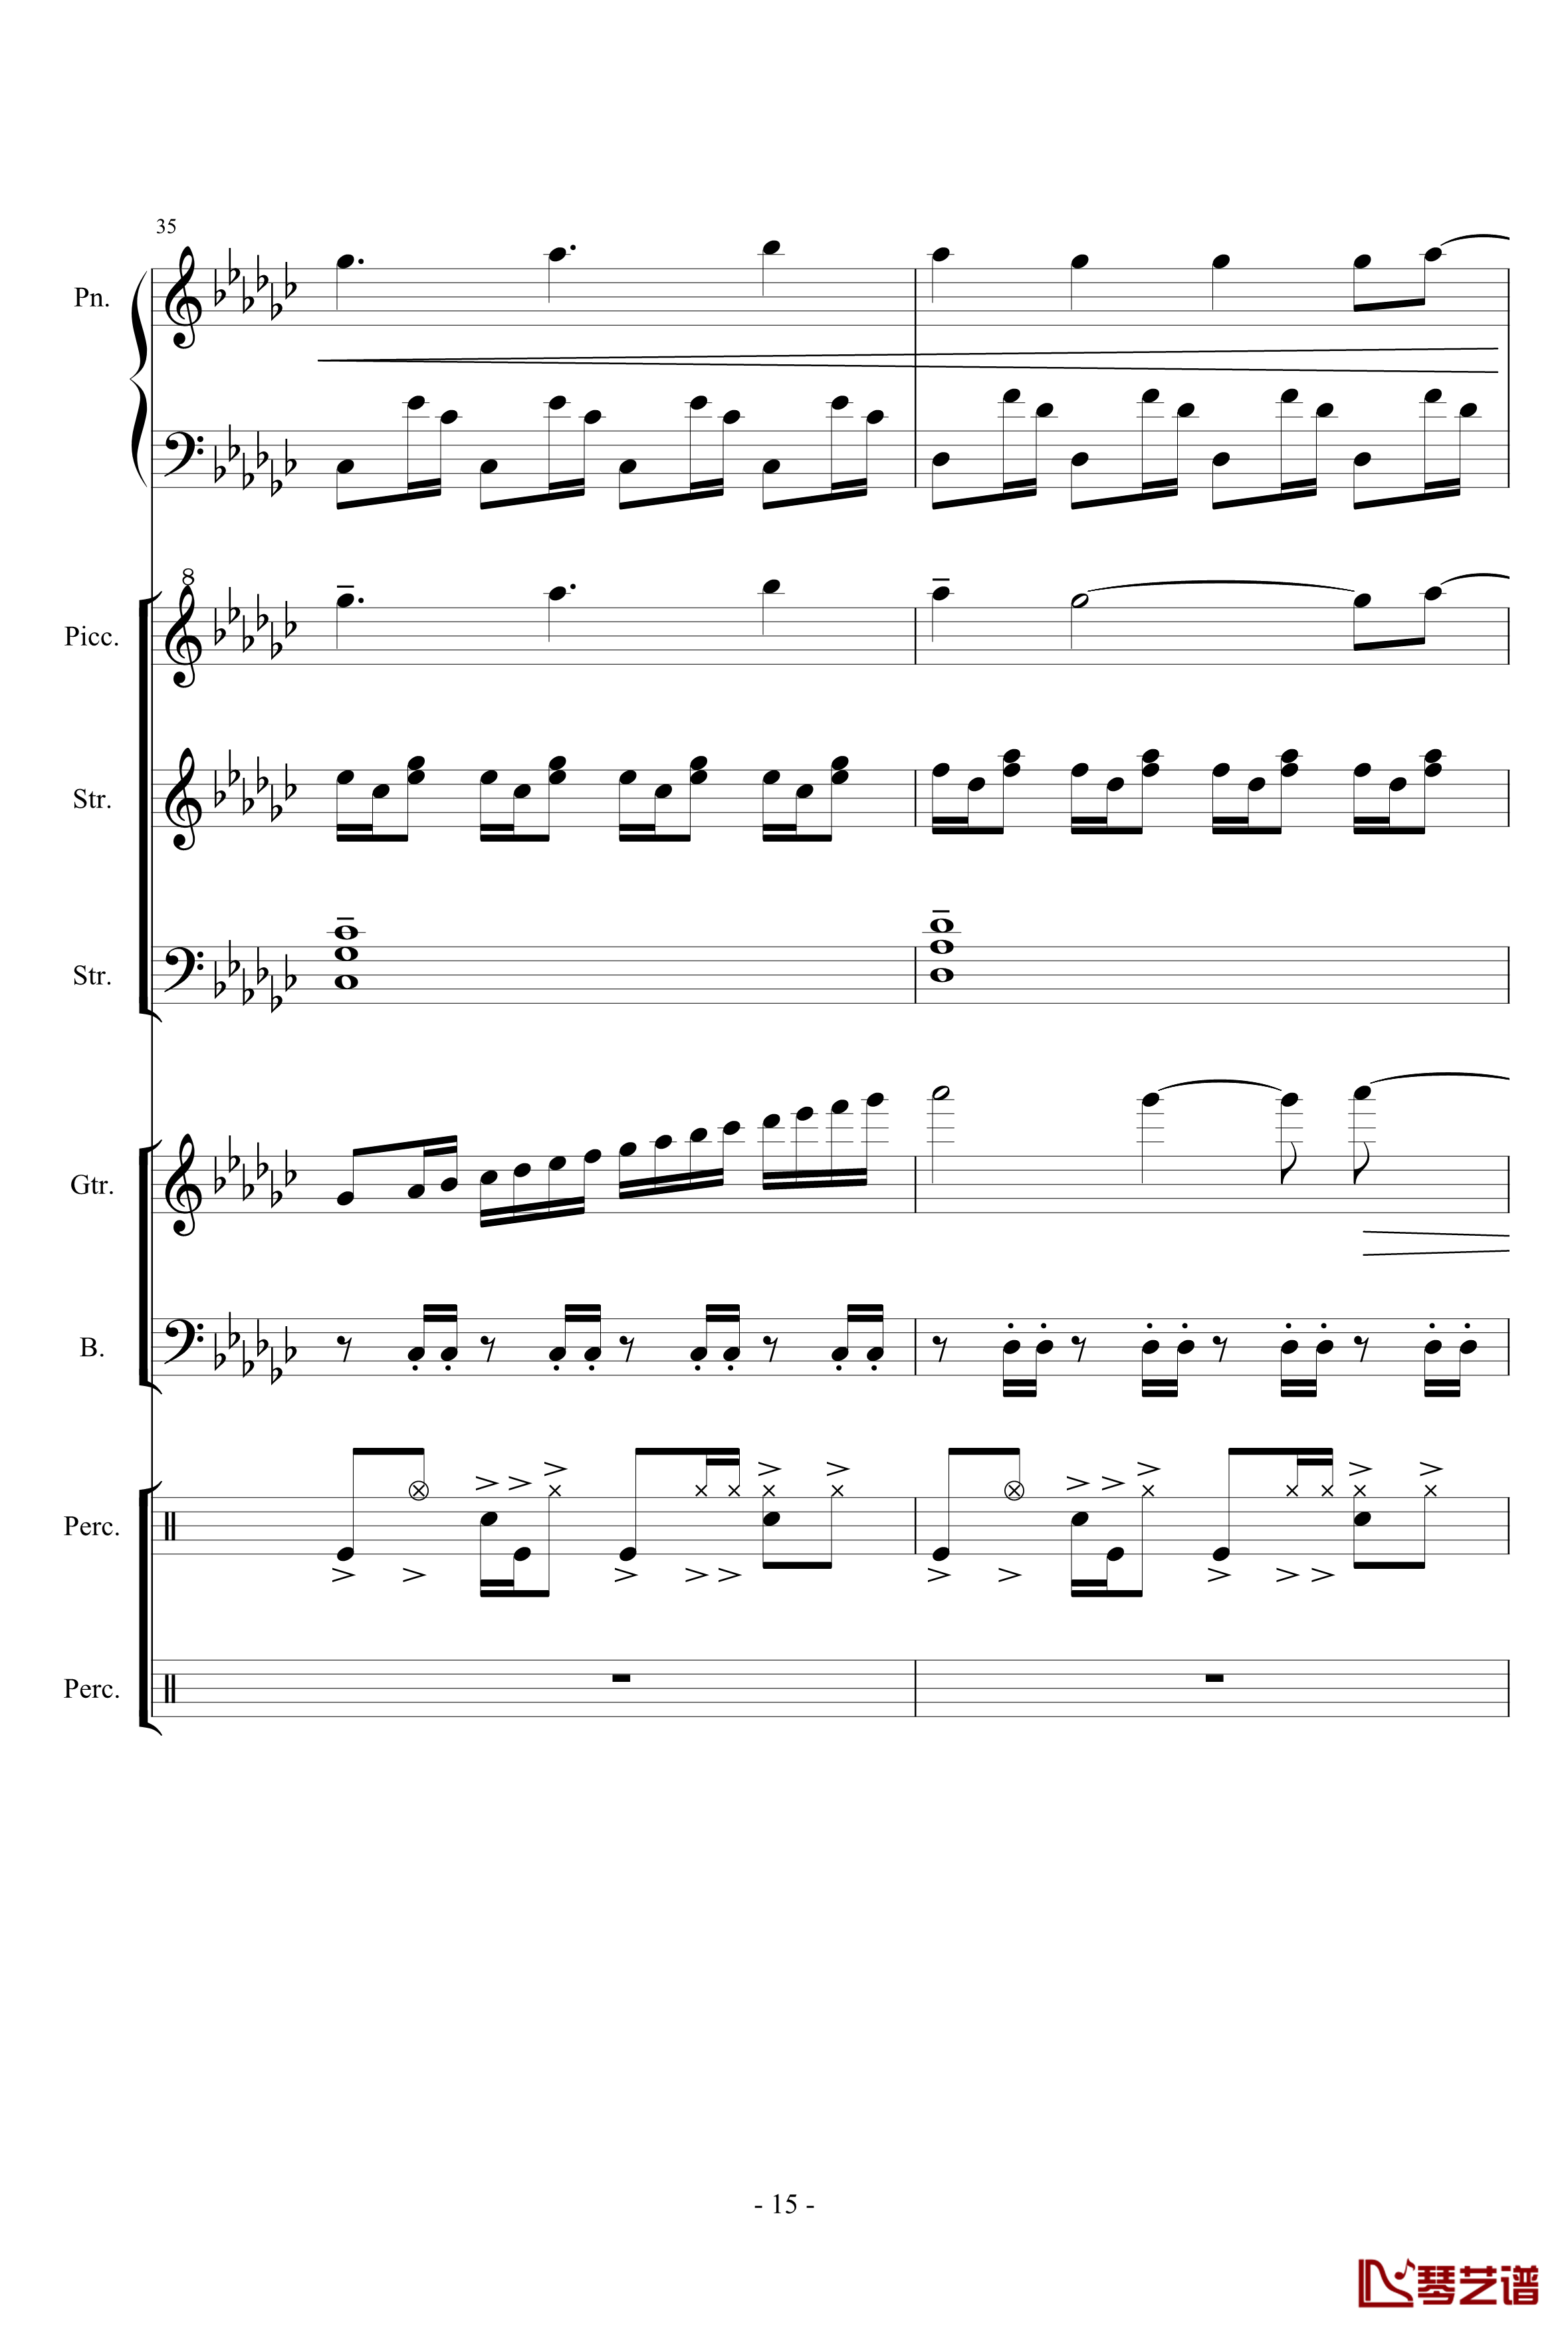 幻想世界之音2钢琴谱-lujianxiang55515